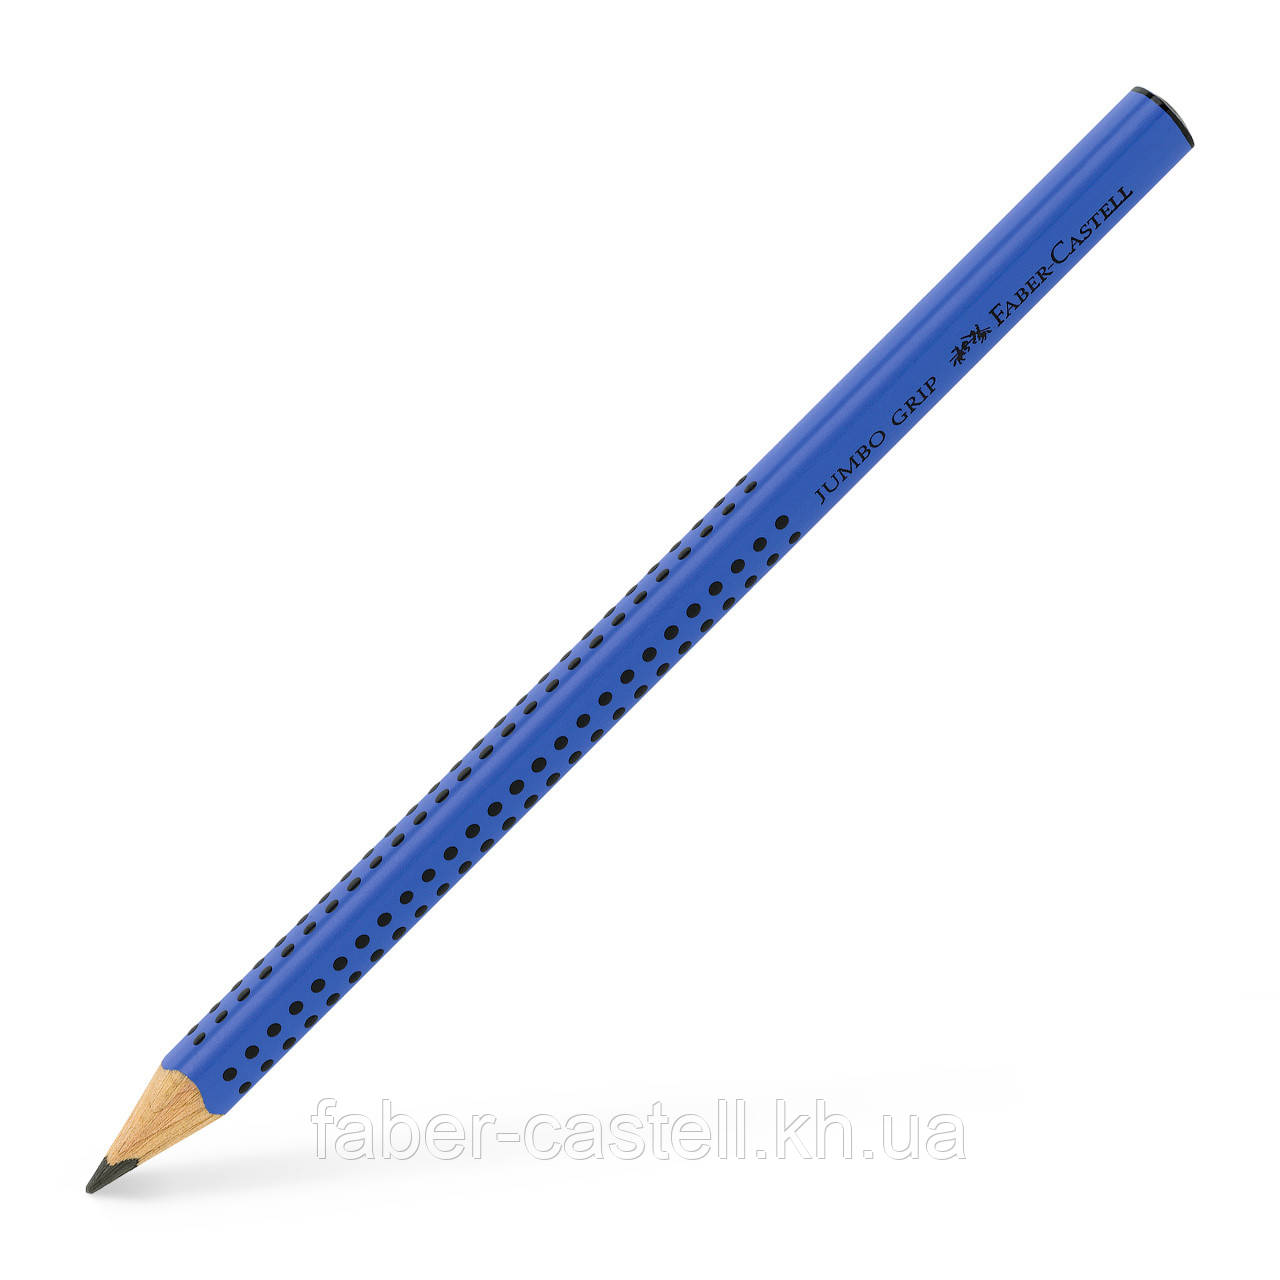 Олівець чорнографітний потовщений Faber-Castell Jumbo Grip 2001 В, корпус синій, 280352